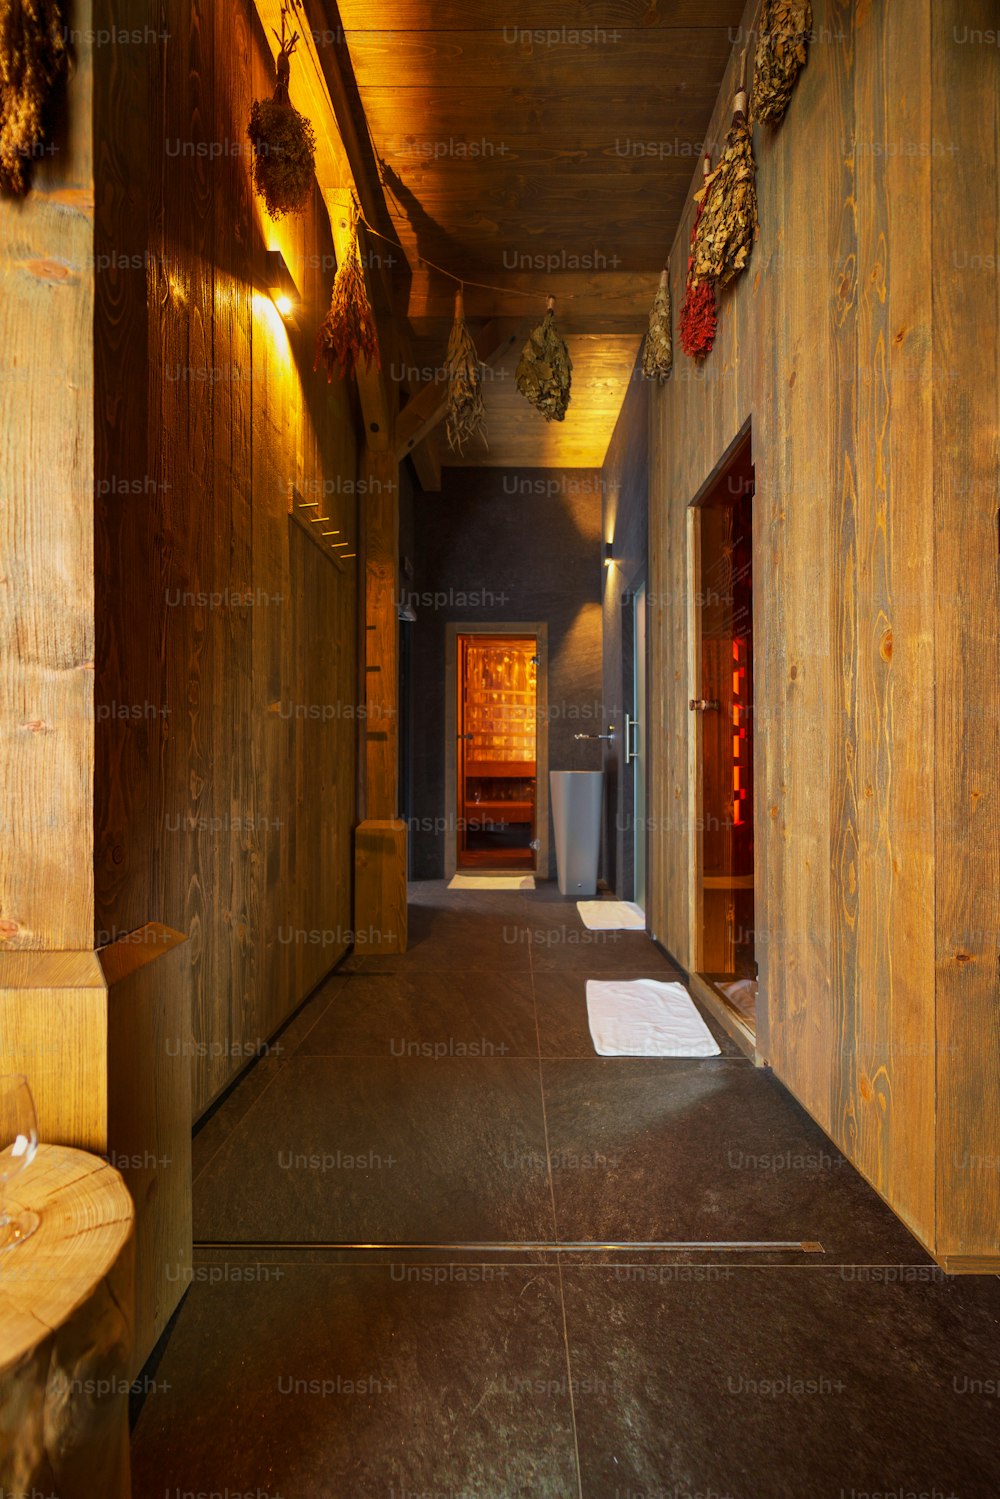 Un interior de un lujoso spa centro de bienestar con sauna.